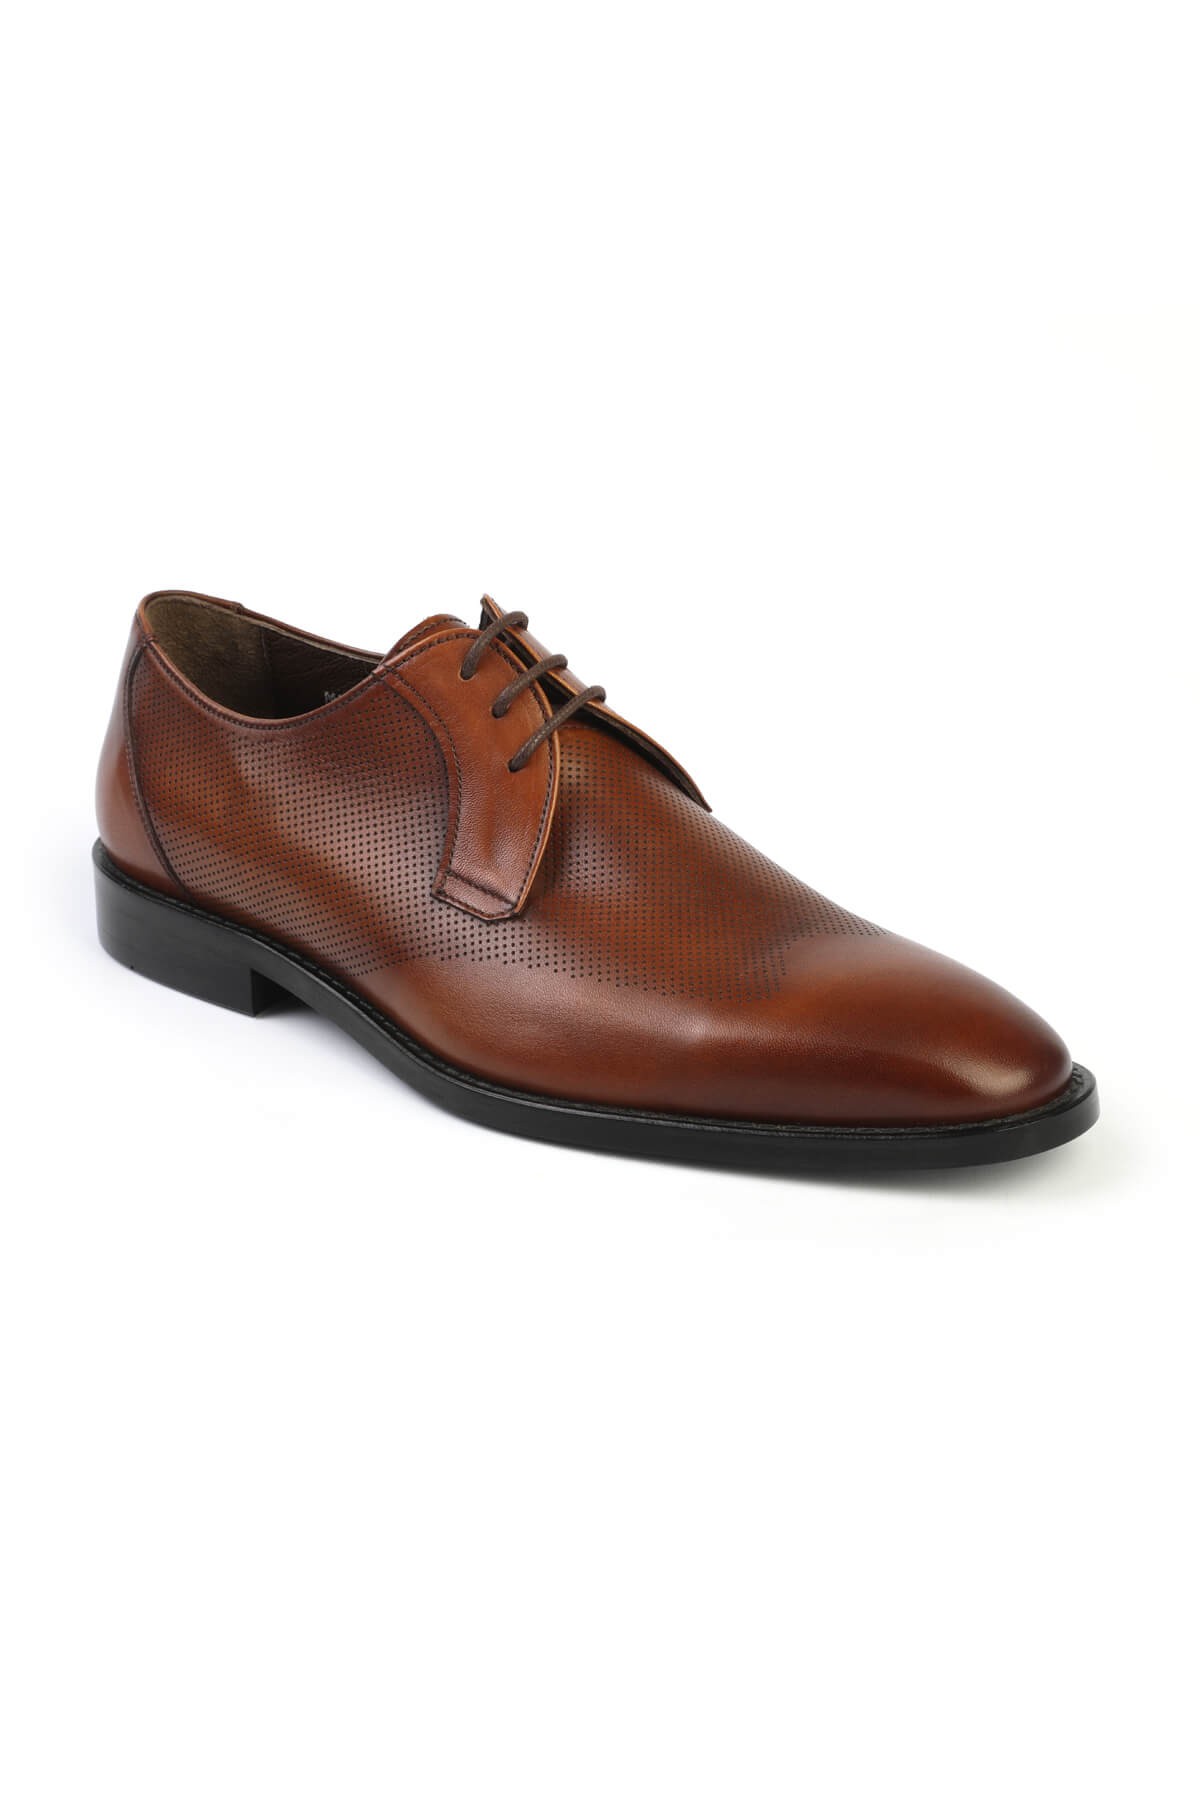 Libero 2725 Klasik Erkek Ayakkabı KAHVE - TABA